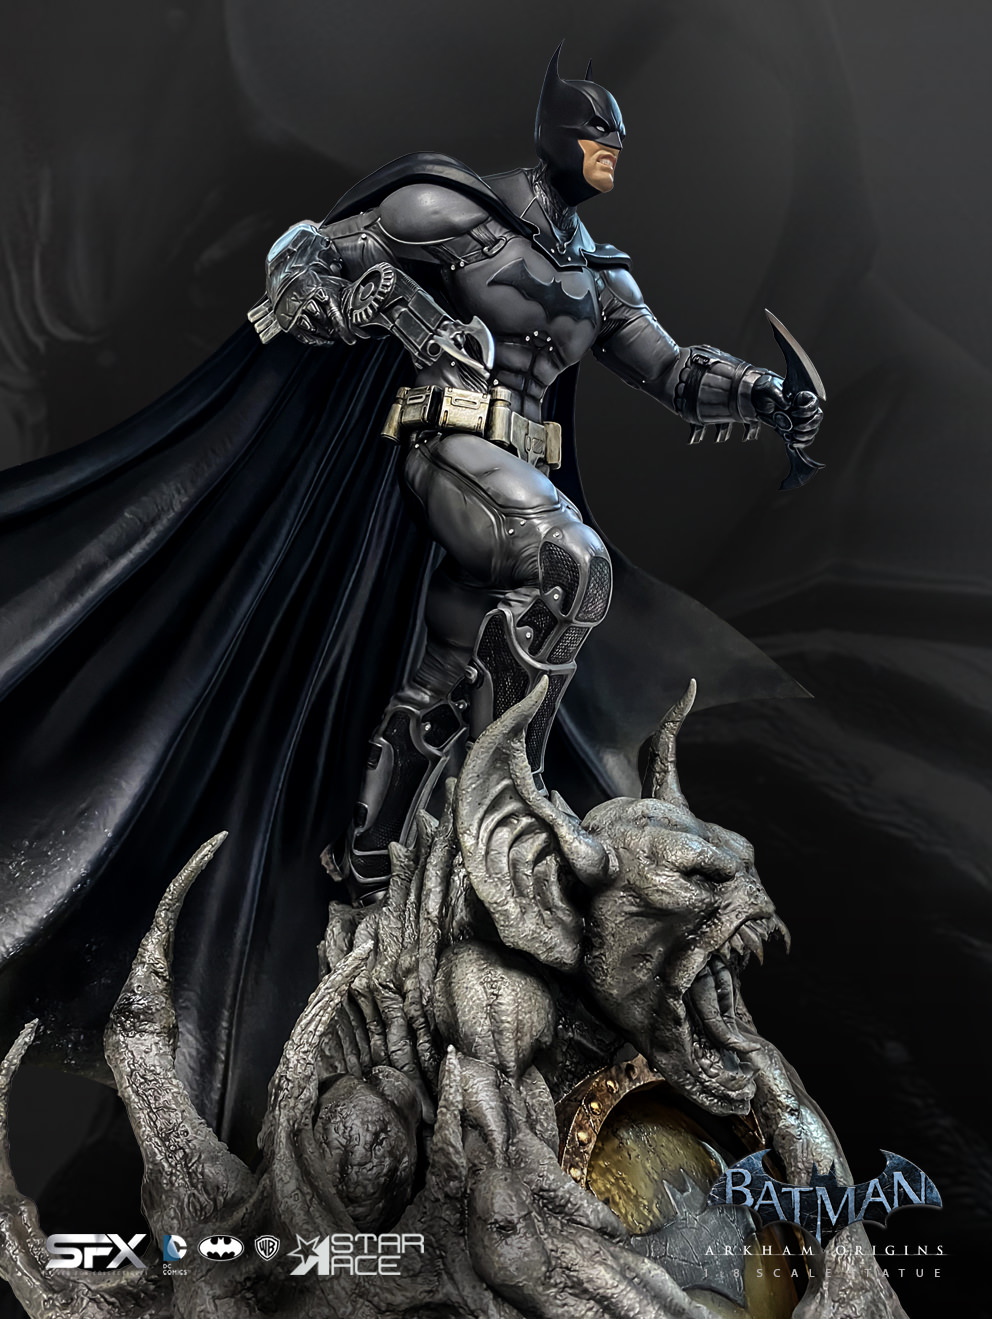 Batman Arkham Origins Exclusive Edition (Prototype Shown) View 32